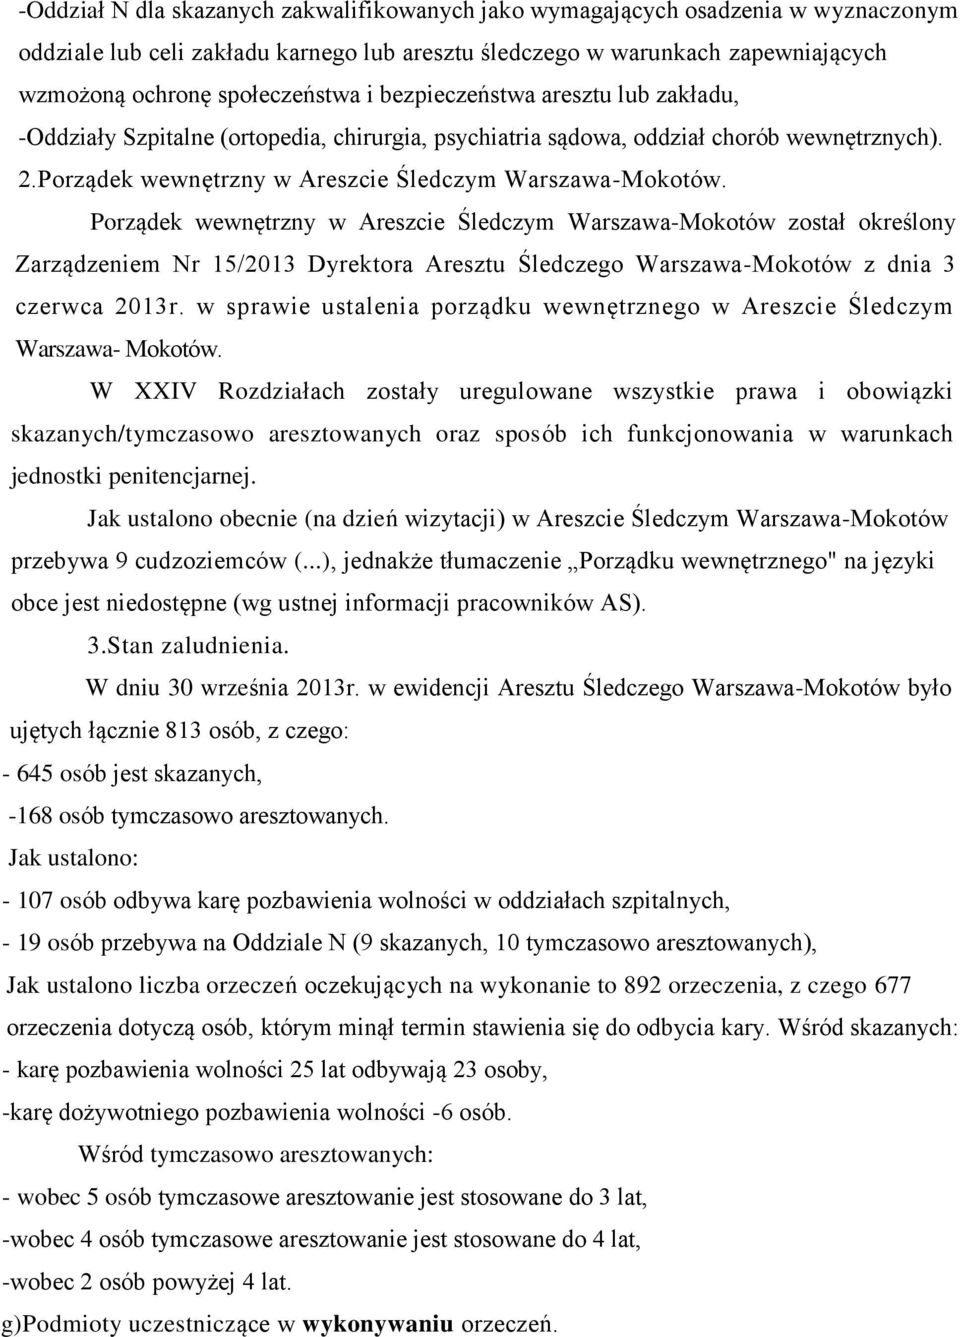 Porządek wewnętrzny w Areszcie Śledczym Warszawa-Mokotów został określony Zarządzeniem Nr 15/2013 Dyrektora Aresztu Śledczego Warszawa-Mokotów z dnia 3 czerwca 2013r.